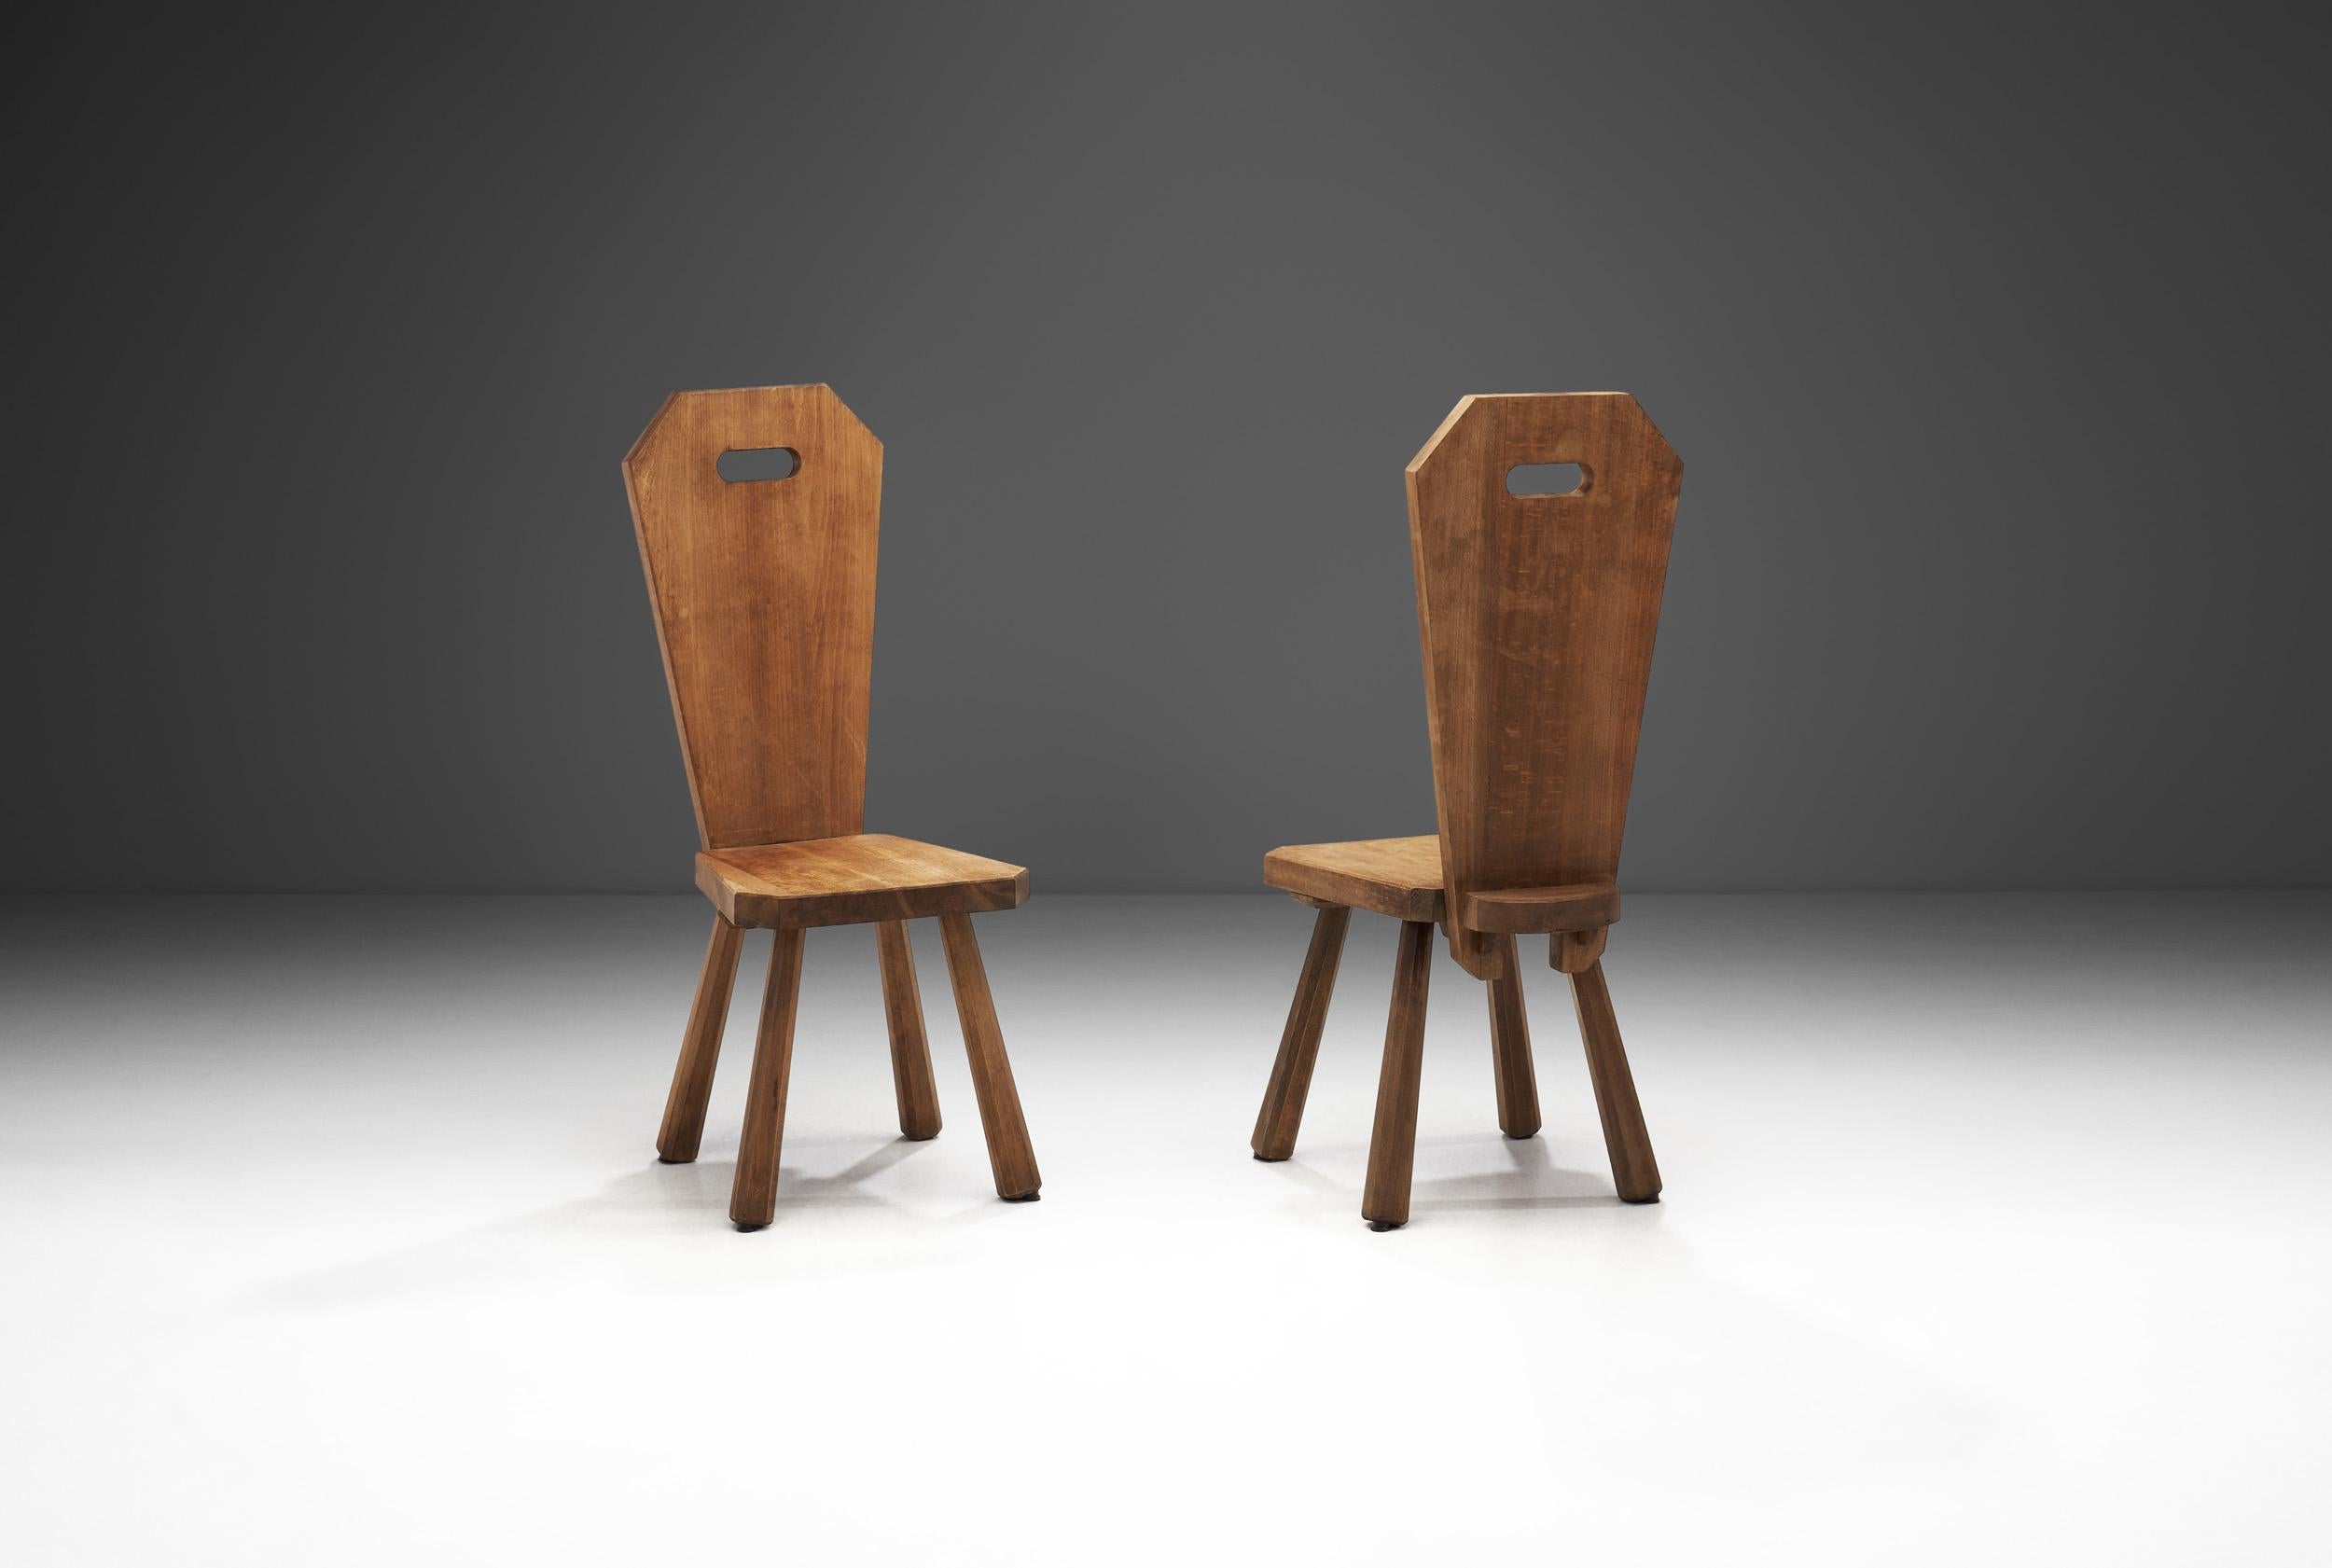 Avec une forme organique robuste et une palette de couleurs terre, cette paire de chaises est l'incarnation du Brutalisme. Dans le domaine du mobilier et de la décoration, le mouvement brutaliste était sombre, donnant de l'importance à des formes